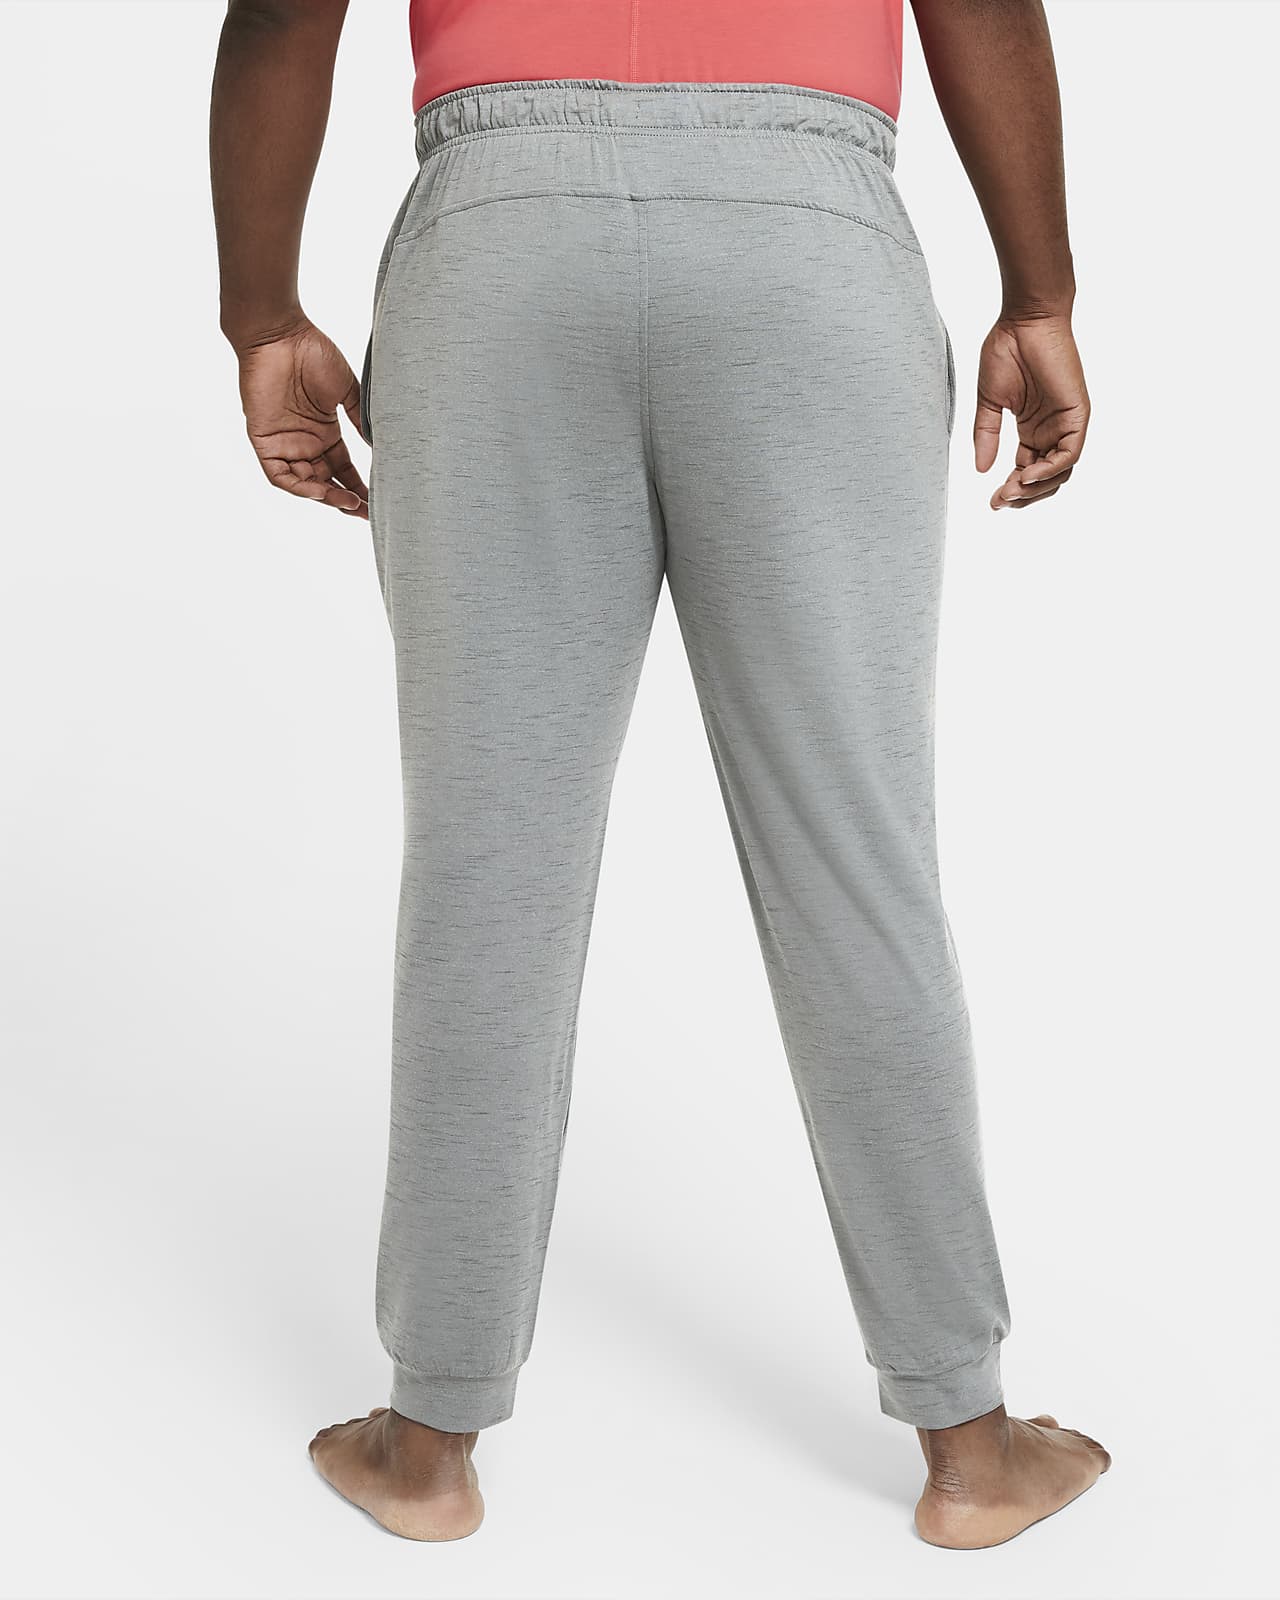 Nike Yoga Dri-FIT Men's Pants